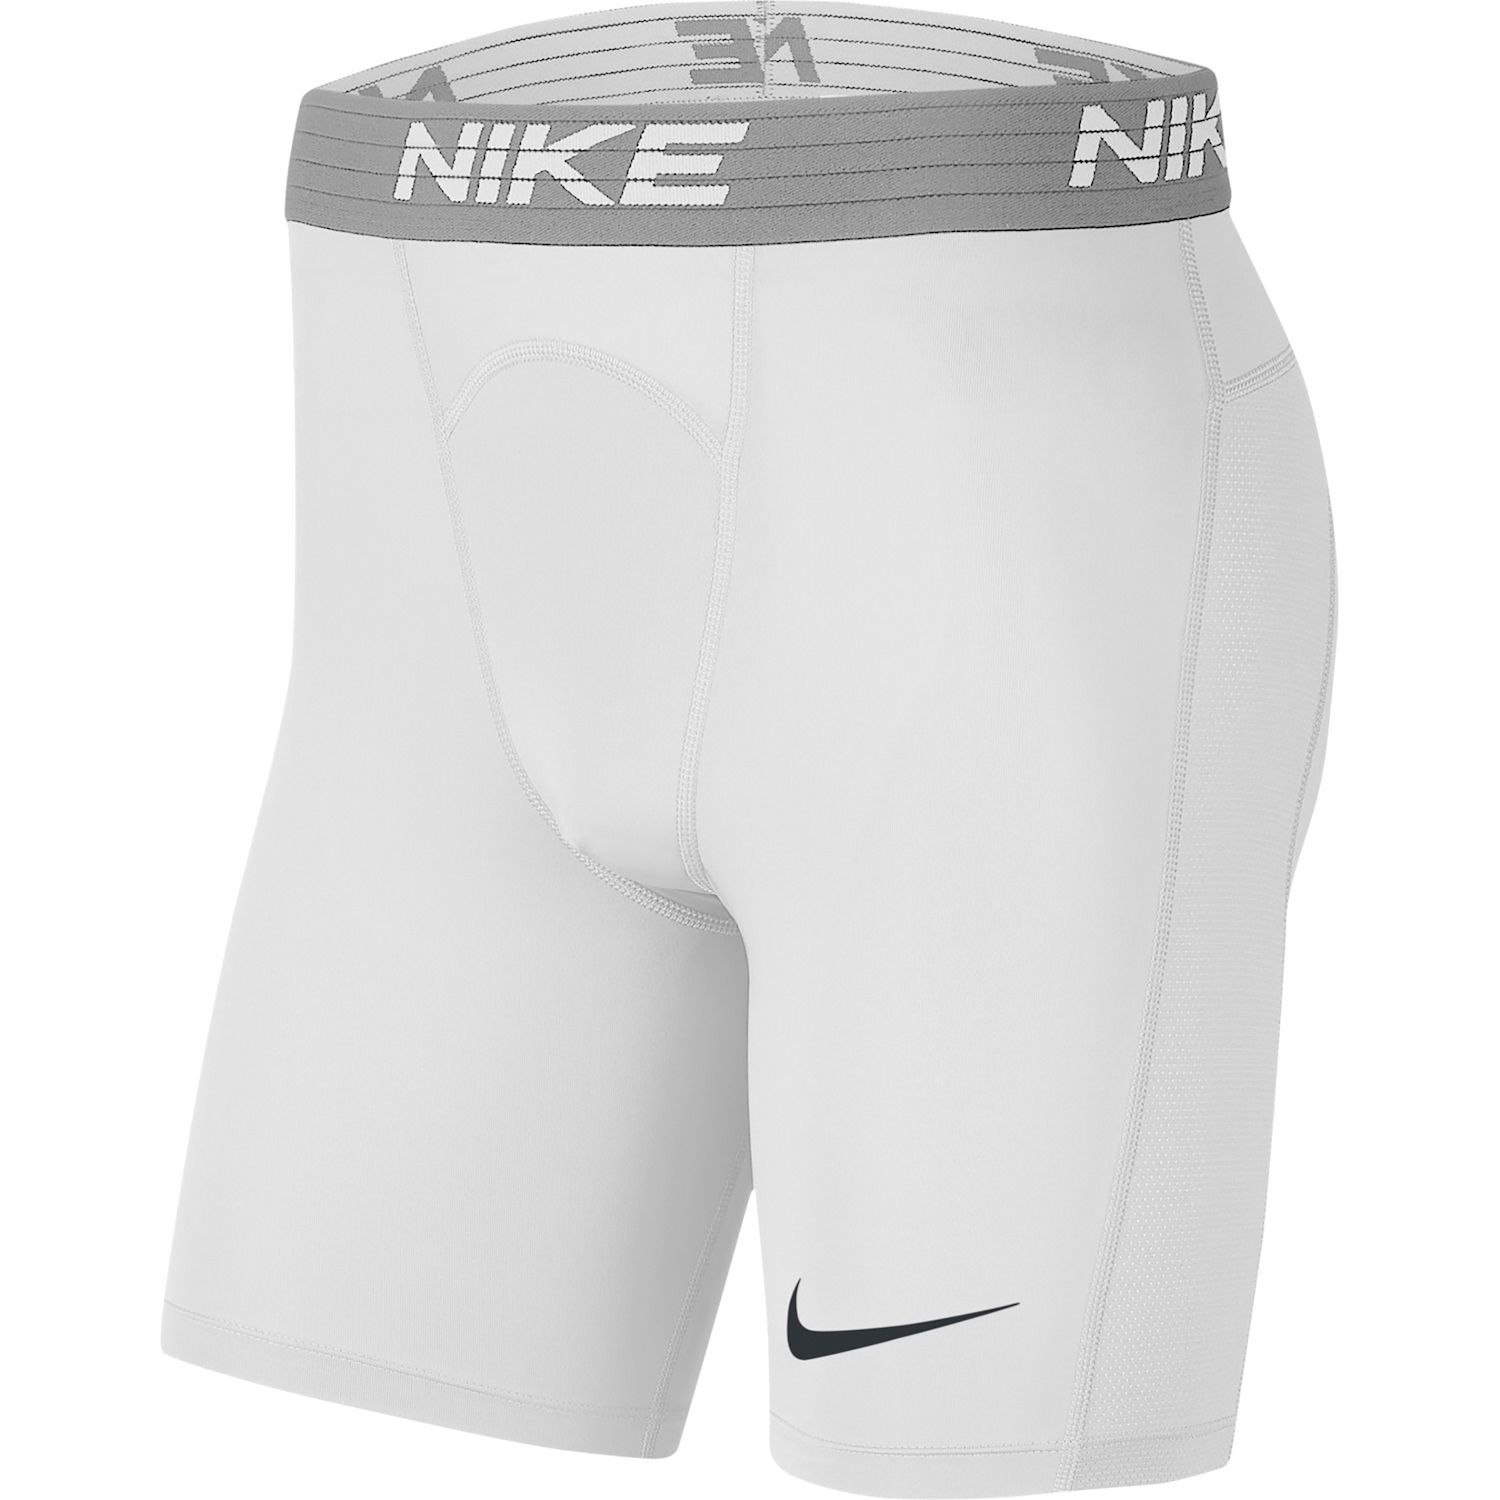 kohls nike pro shorts Sale,up to 67 